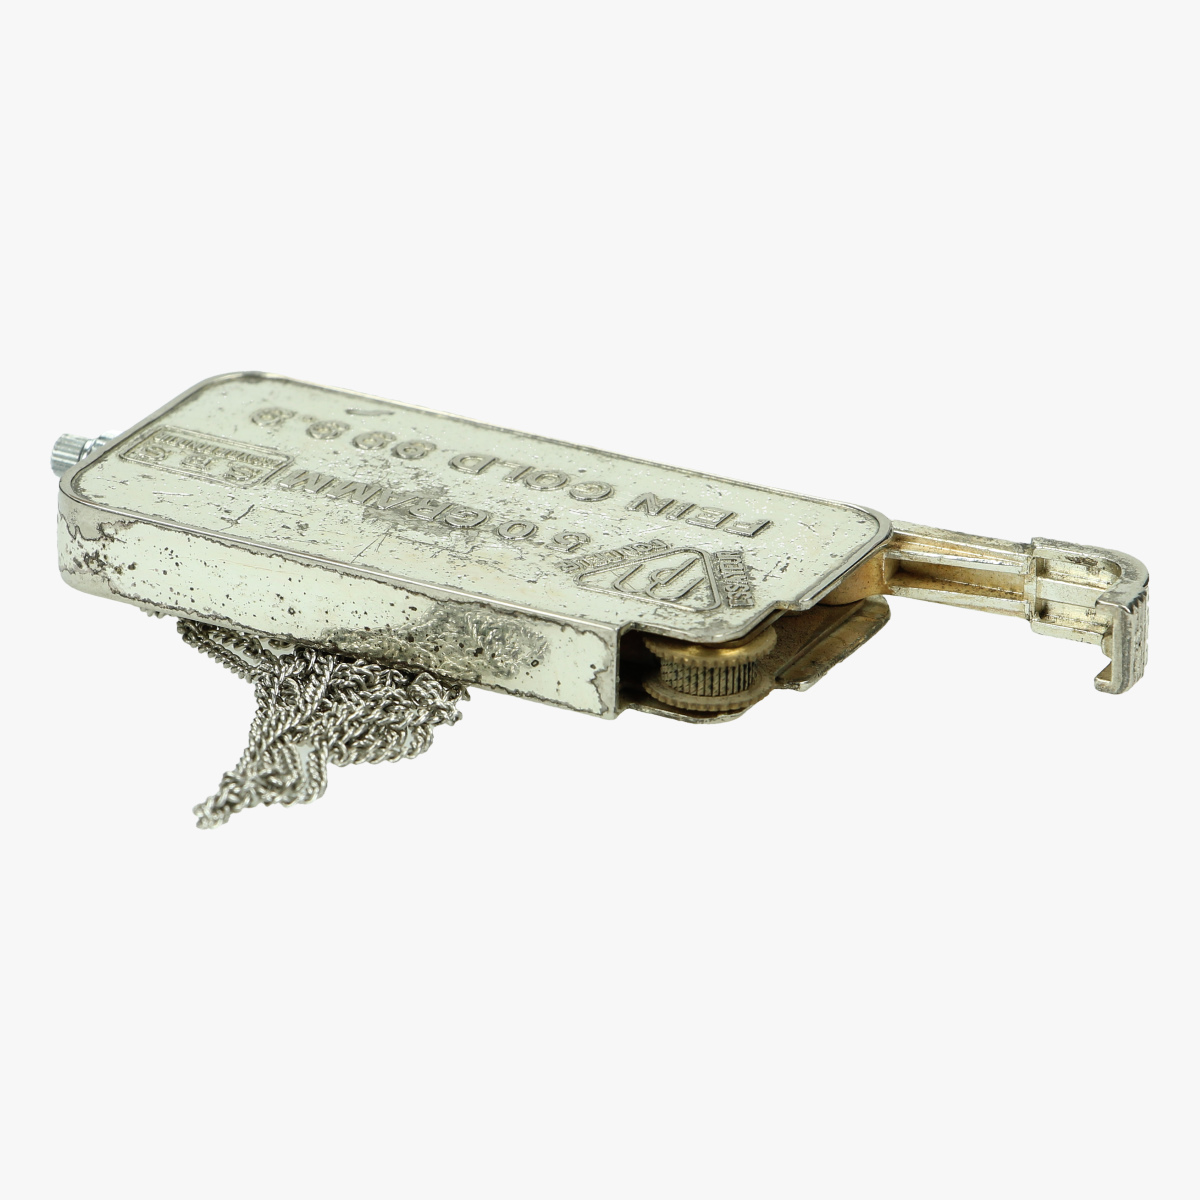 Afbeeldingen van oude aansteker ketting goudbaar 50 gram swiss bank corporation de ketting is 72 cm